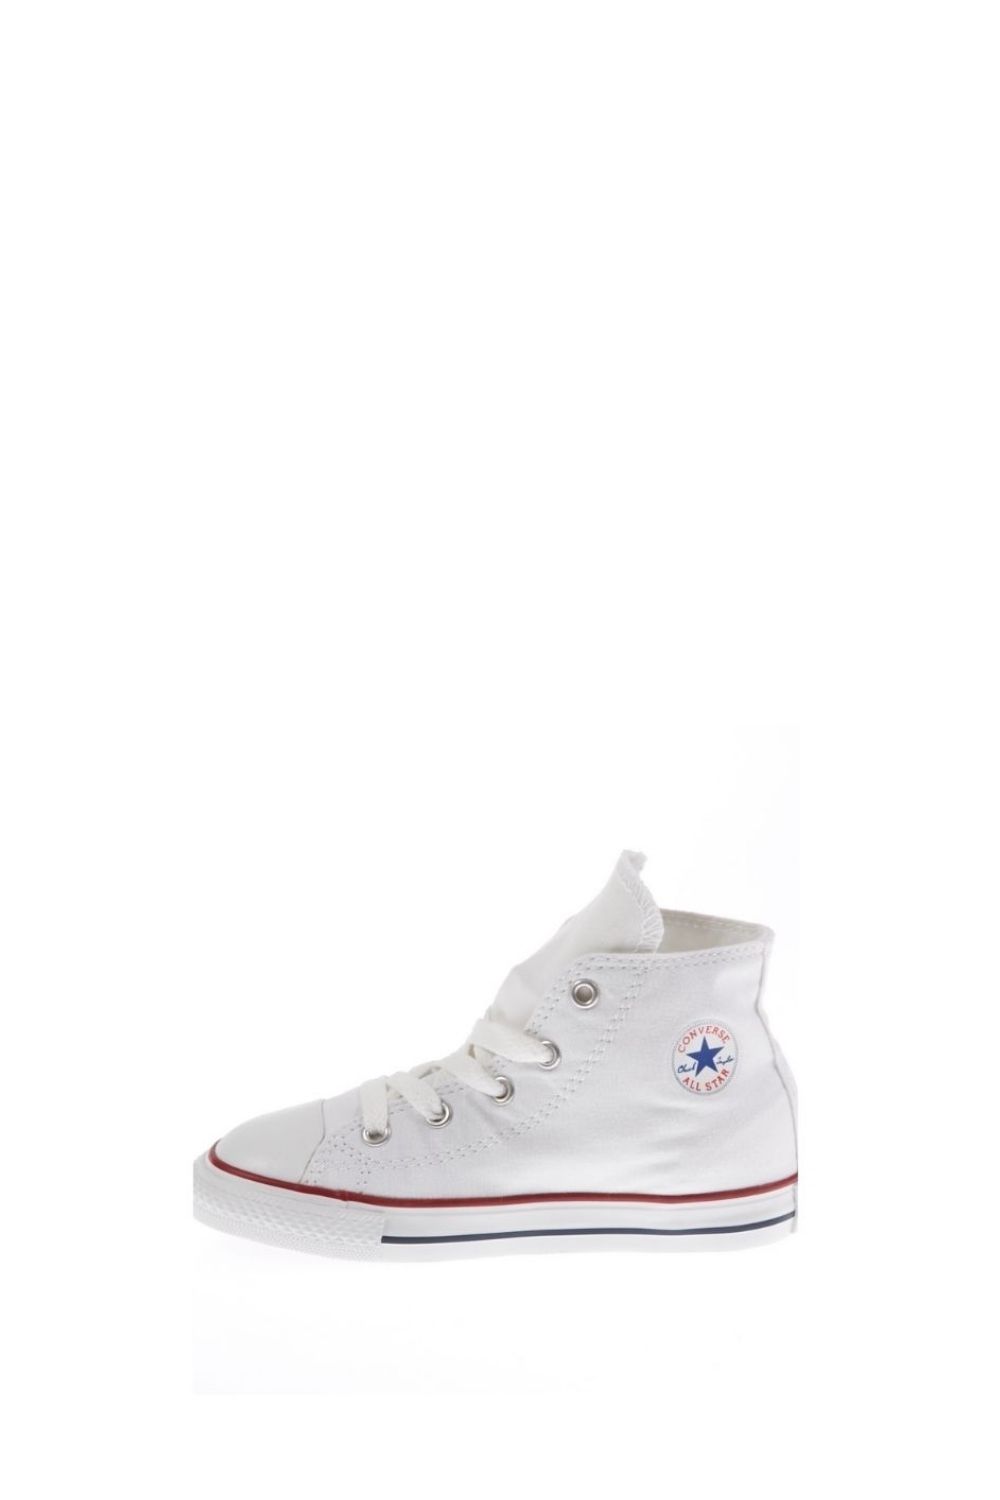 Παιδικά/Baby/Παπούτσια/Sneakers CONVERSE - Βρεφικά μποτάκια Chuck Taylor λευκά